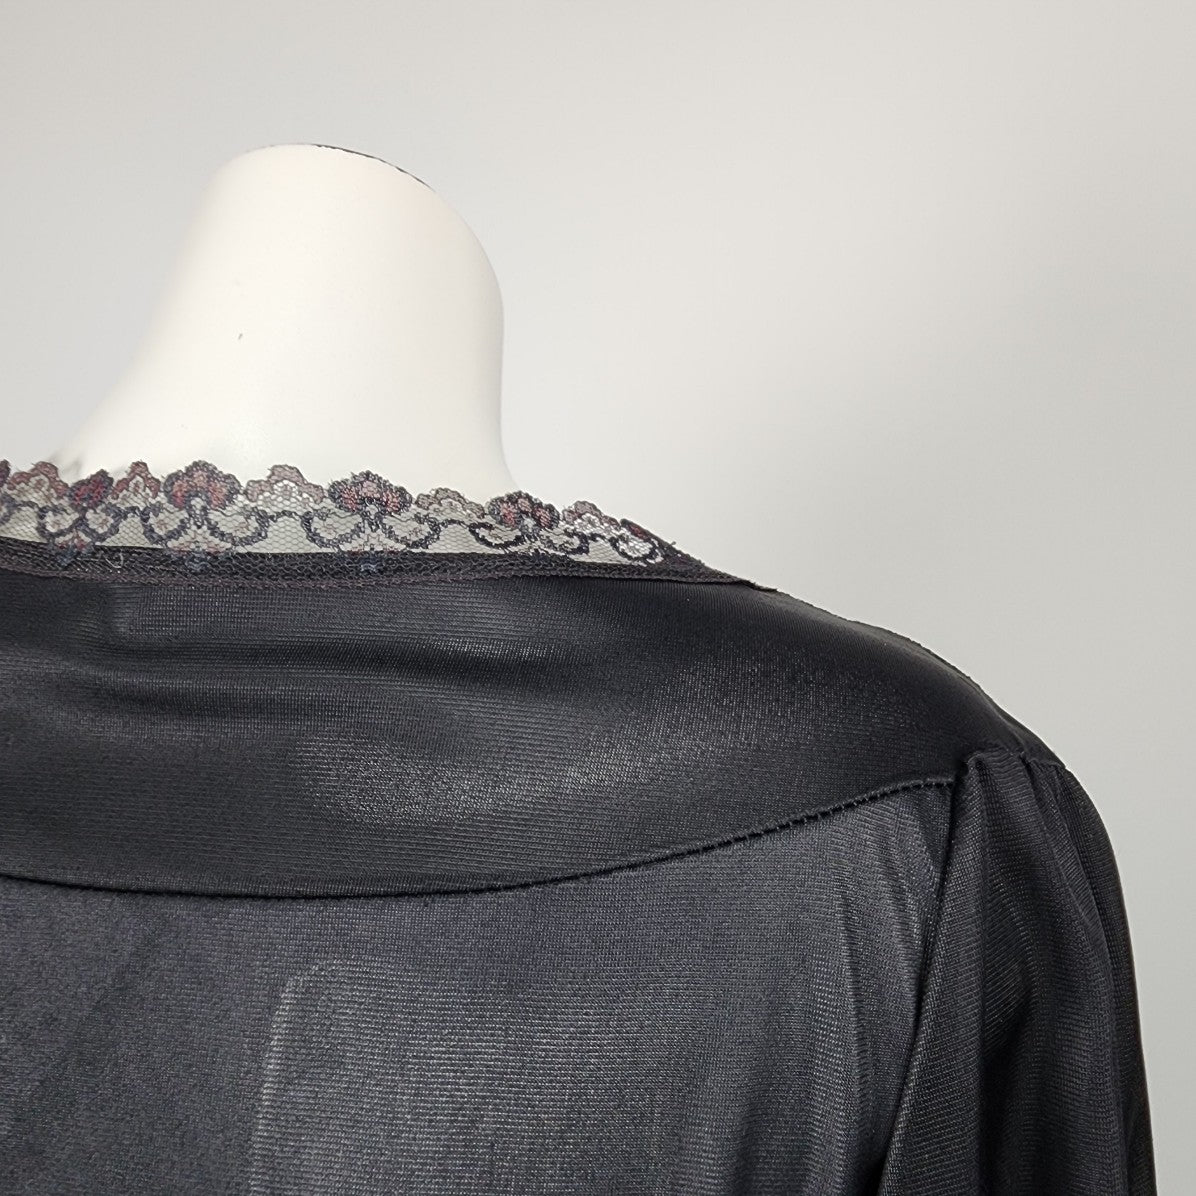 Vintage Black Lace Detail Dressing gown Size S/M